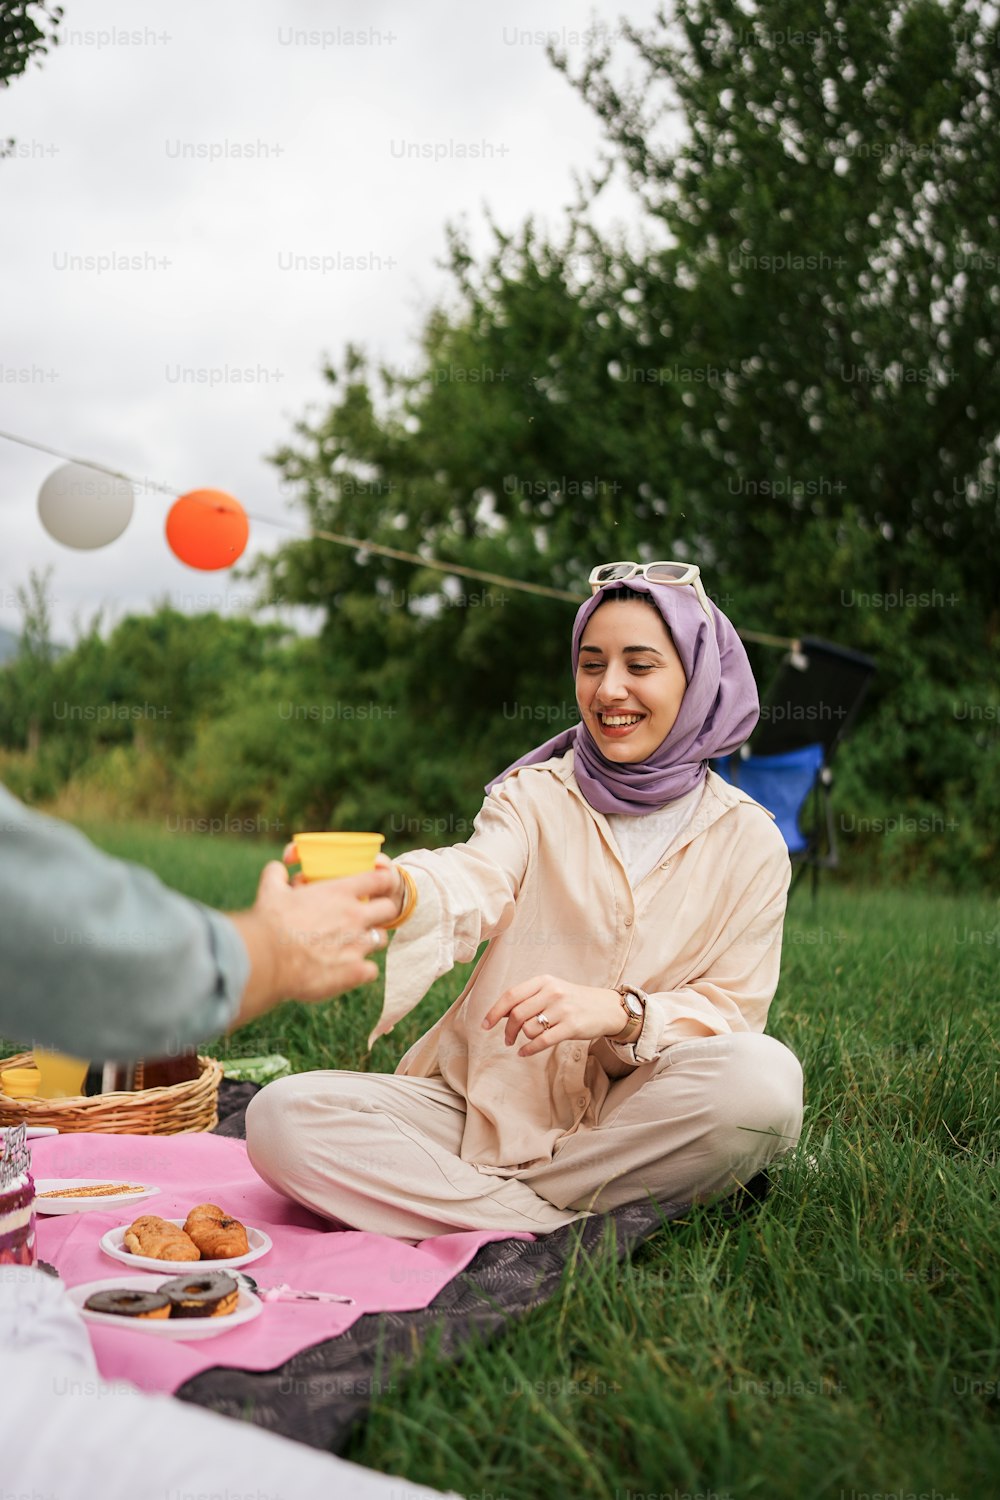 히잡을 쓴 여자가 풀밭에서 �담요를 덮고 앉아 있다